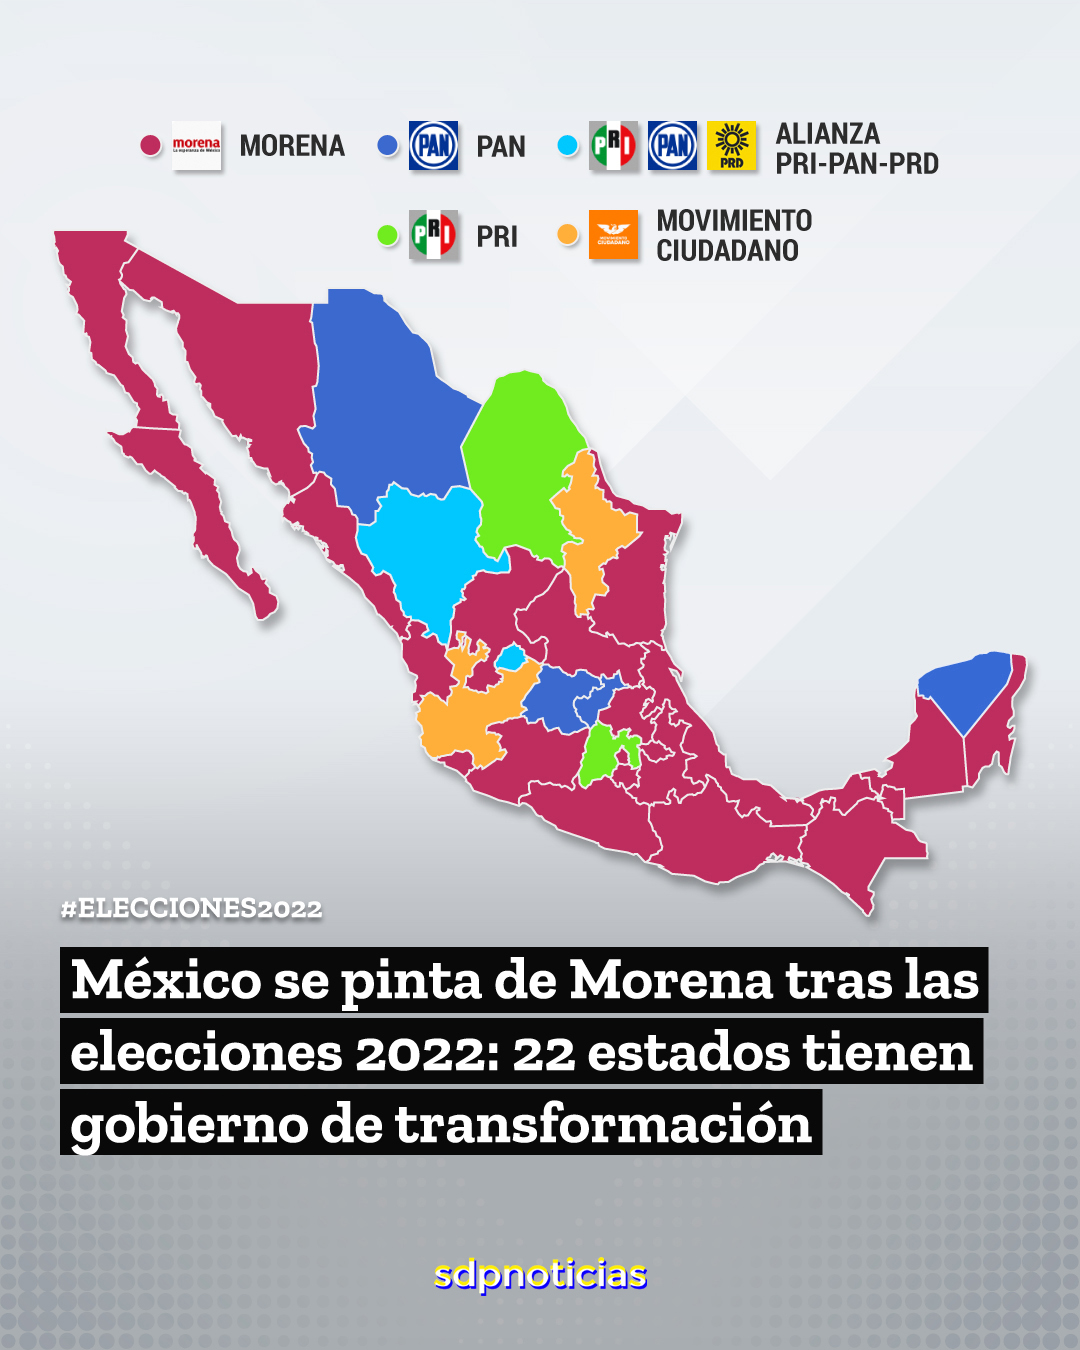 Elecciones 2022 México: Cómo quedó el mapa político del país por partidos;  Morena gobernará 22 estados